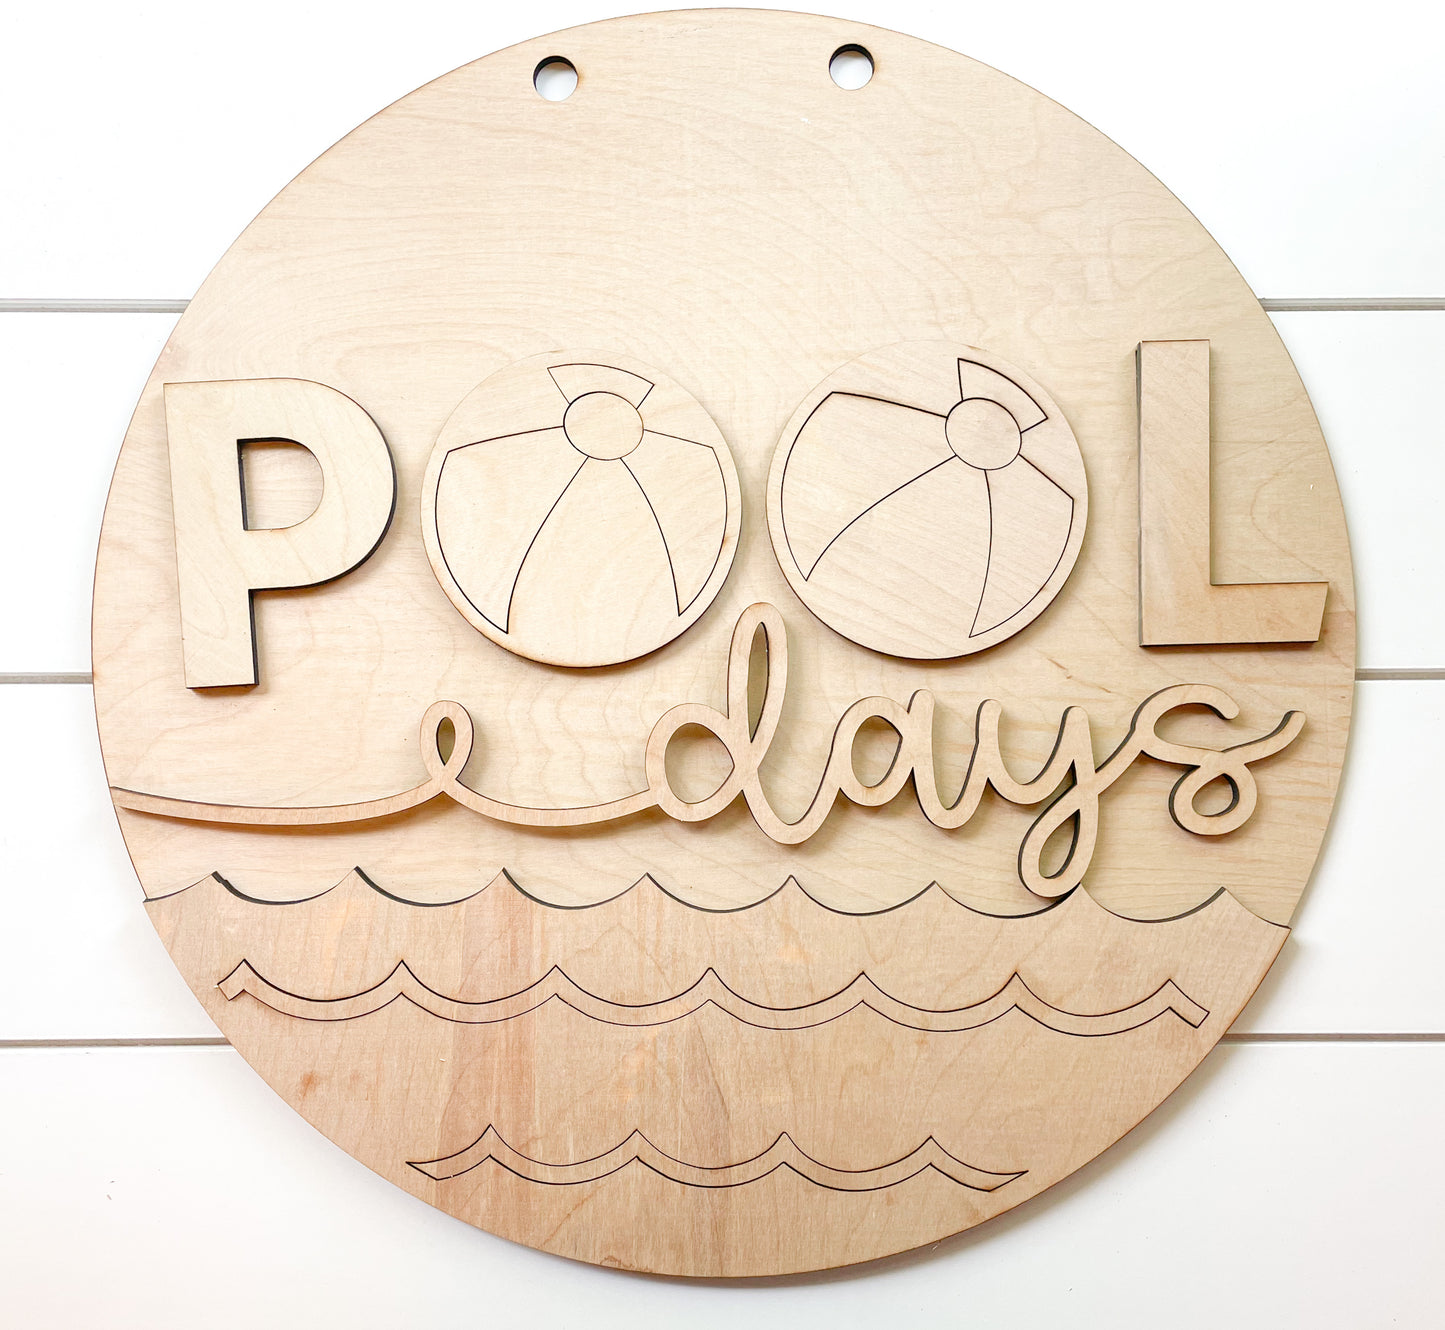 Pool Days Door Hanger DIY Kit